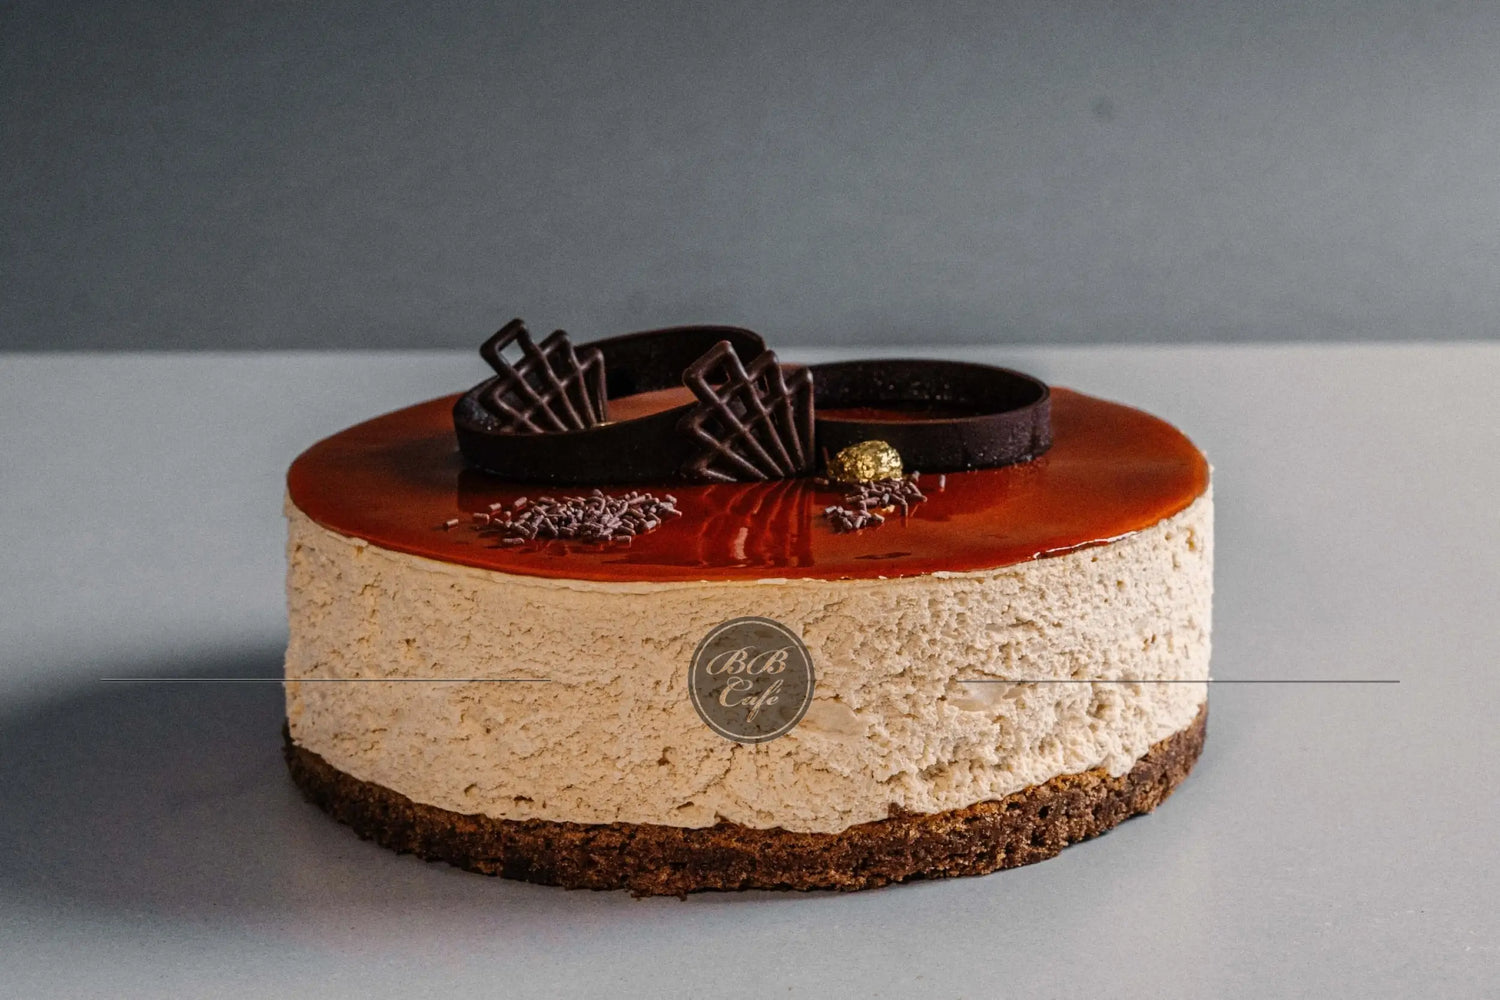 Bb chocolate hazelnut - classic cake